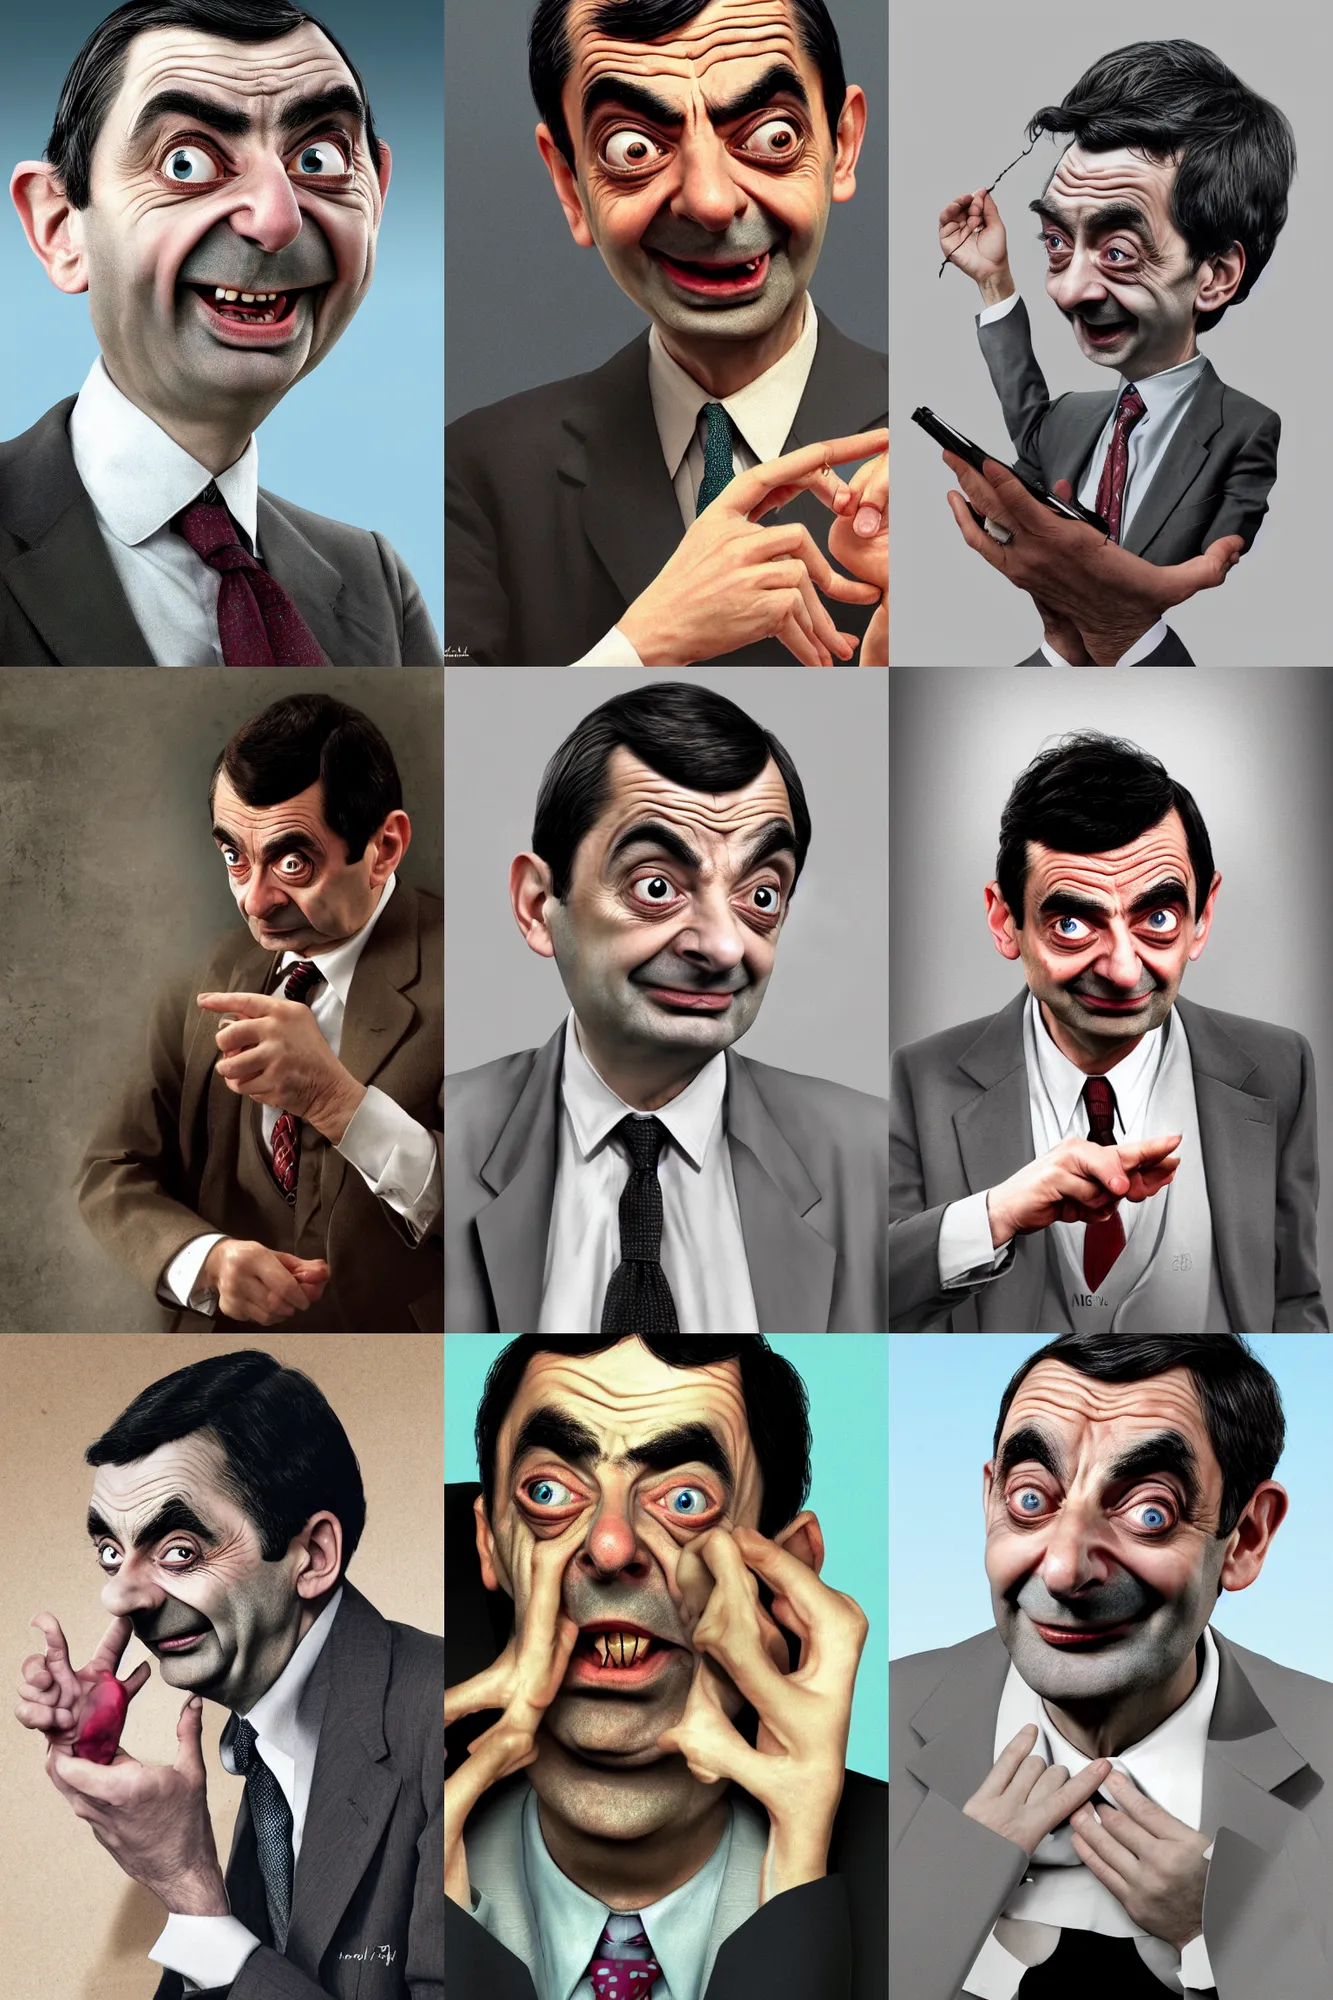 Prompt: a photograph of Mr. Bean Mr. bean Mr. Bean getting his heart broken, hyper realistic, digital art, 4k, detailed, concept art